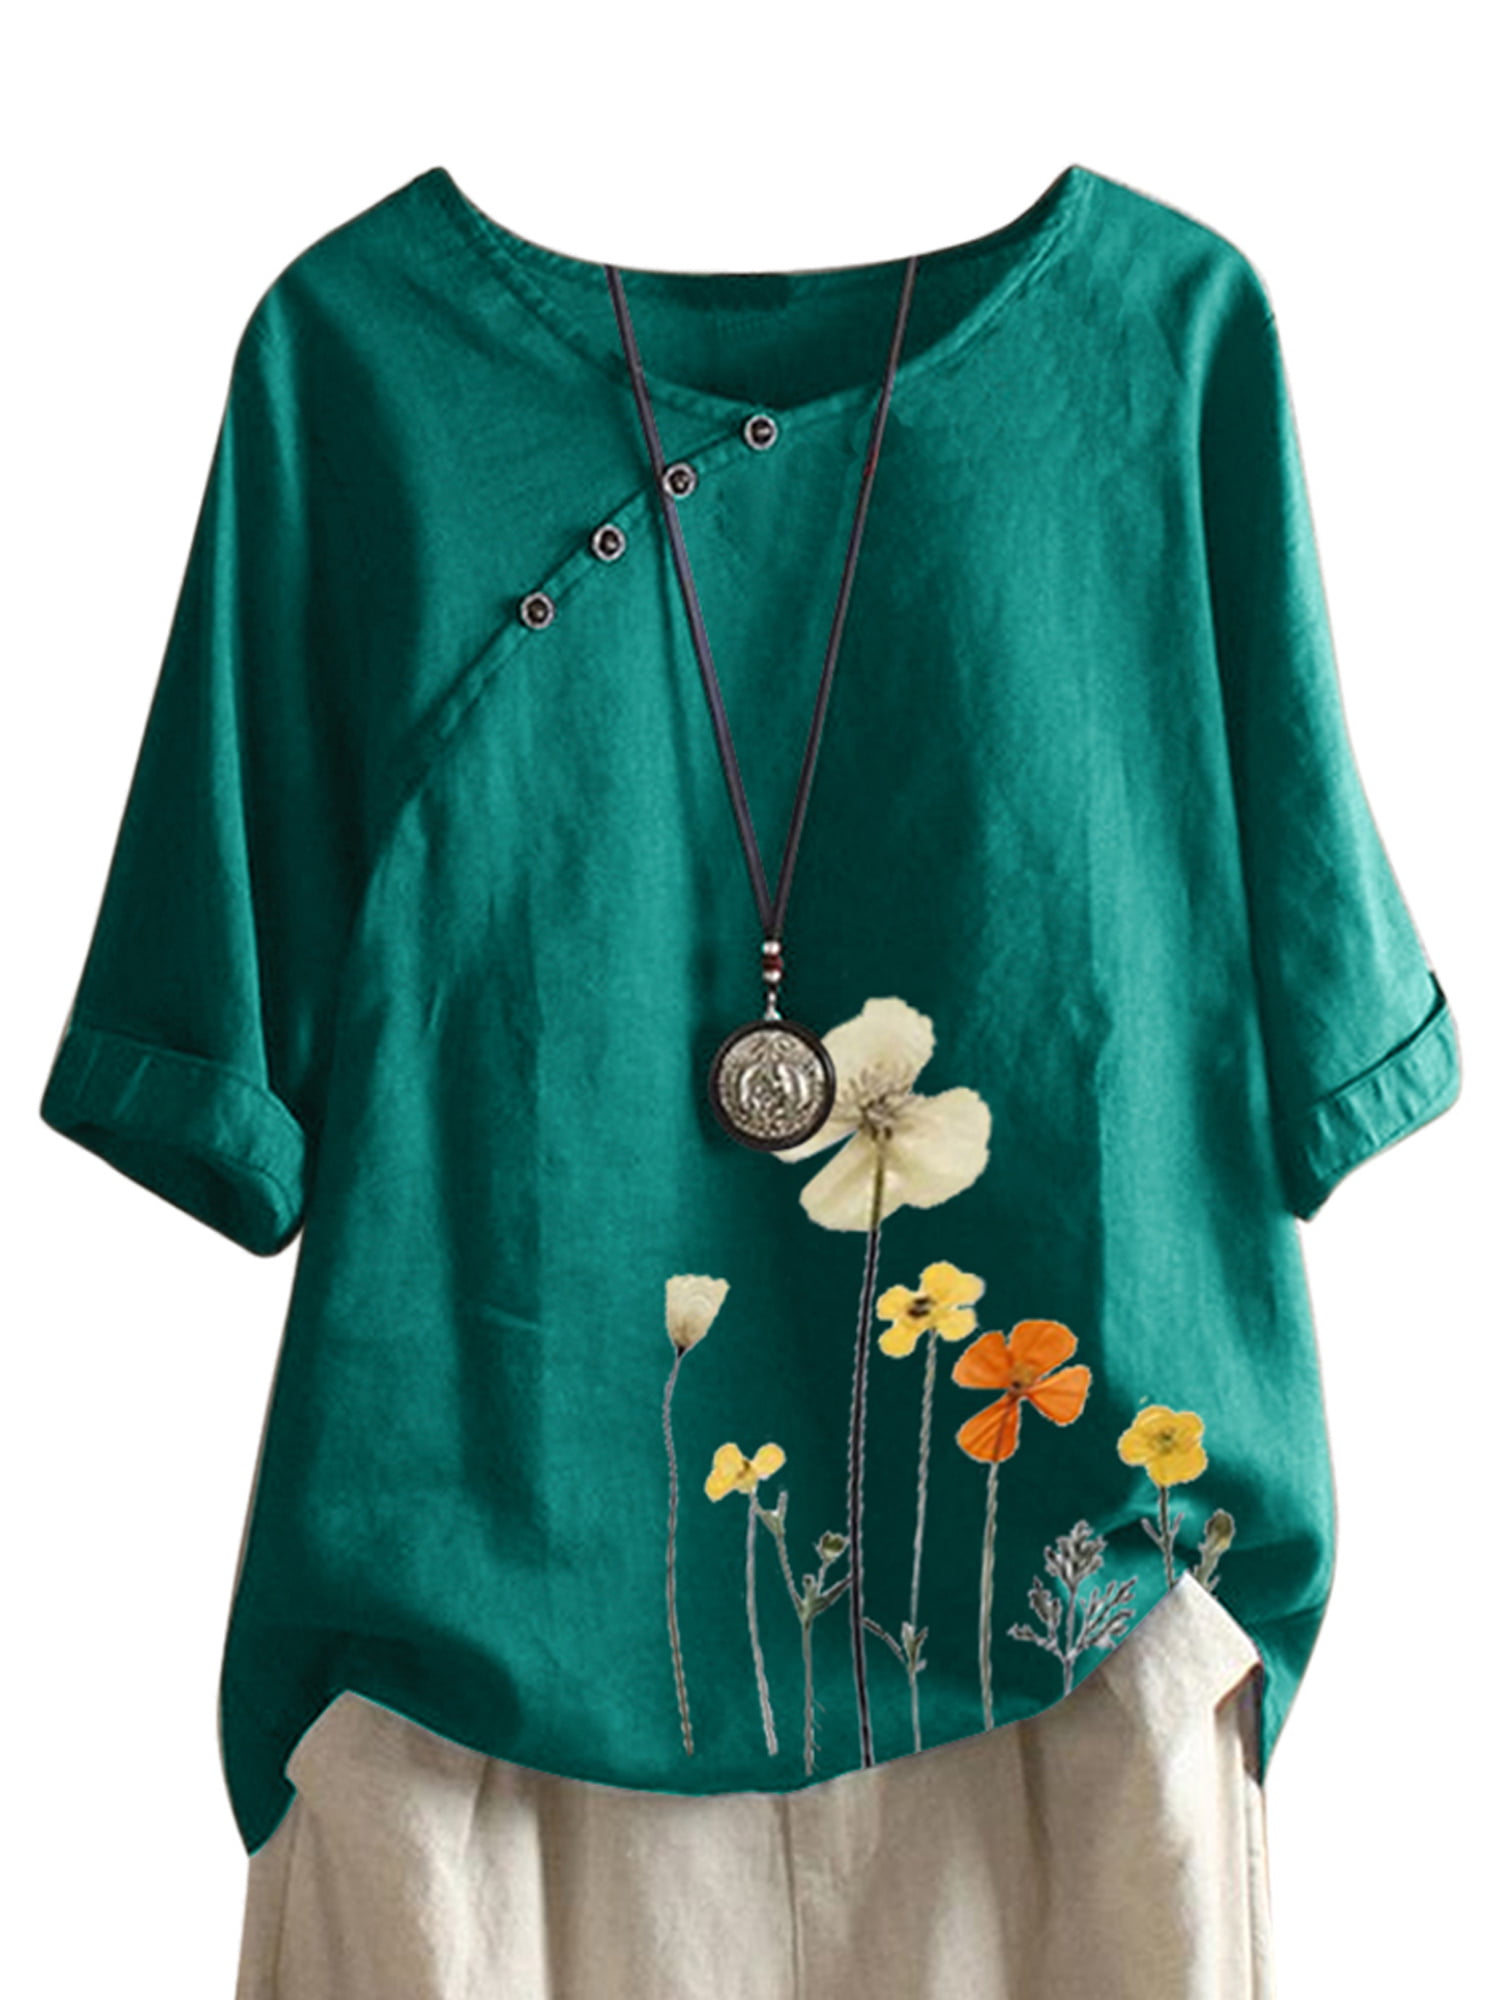 Women Retro Floral Print Top Button Plus Size Short Sleeve Blouse Tunic Shirt US